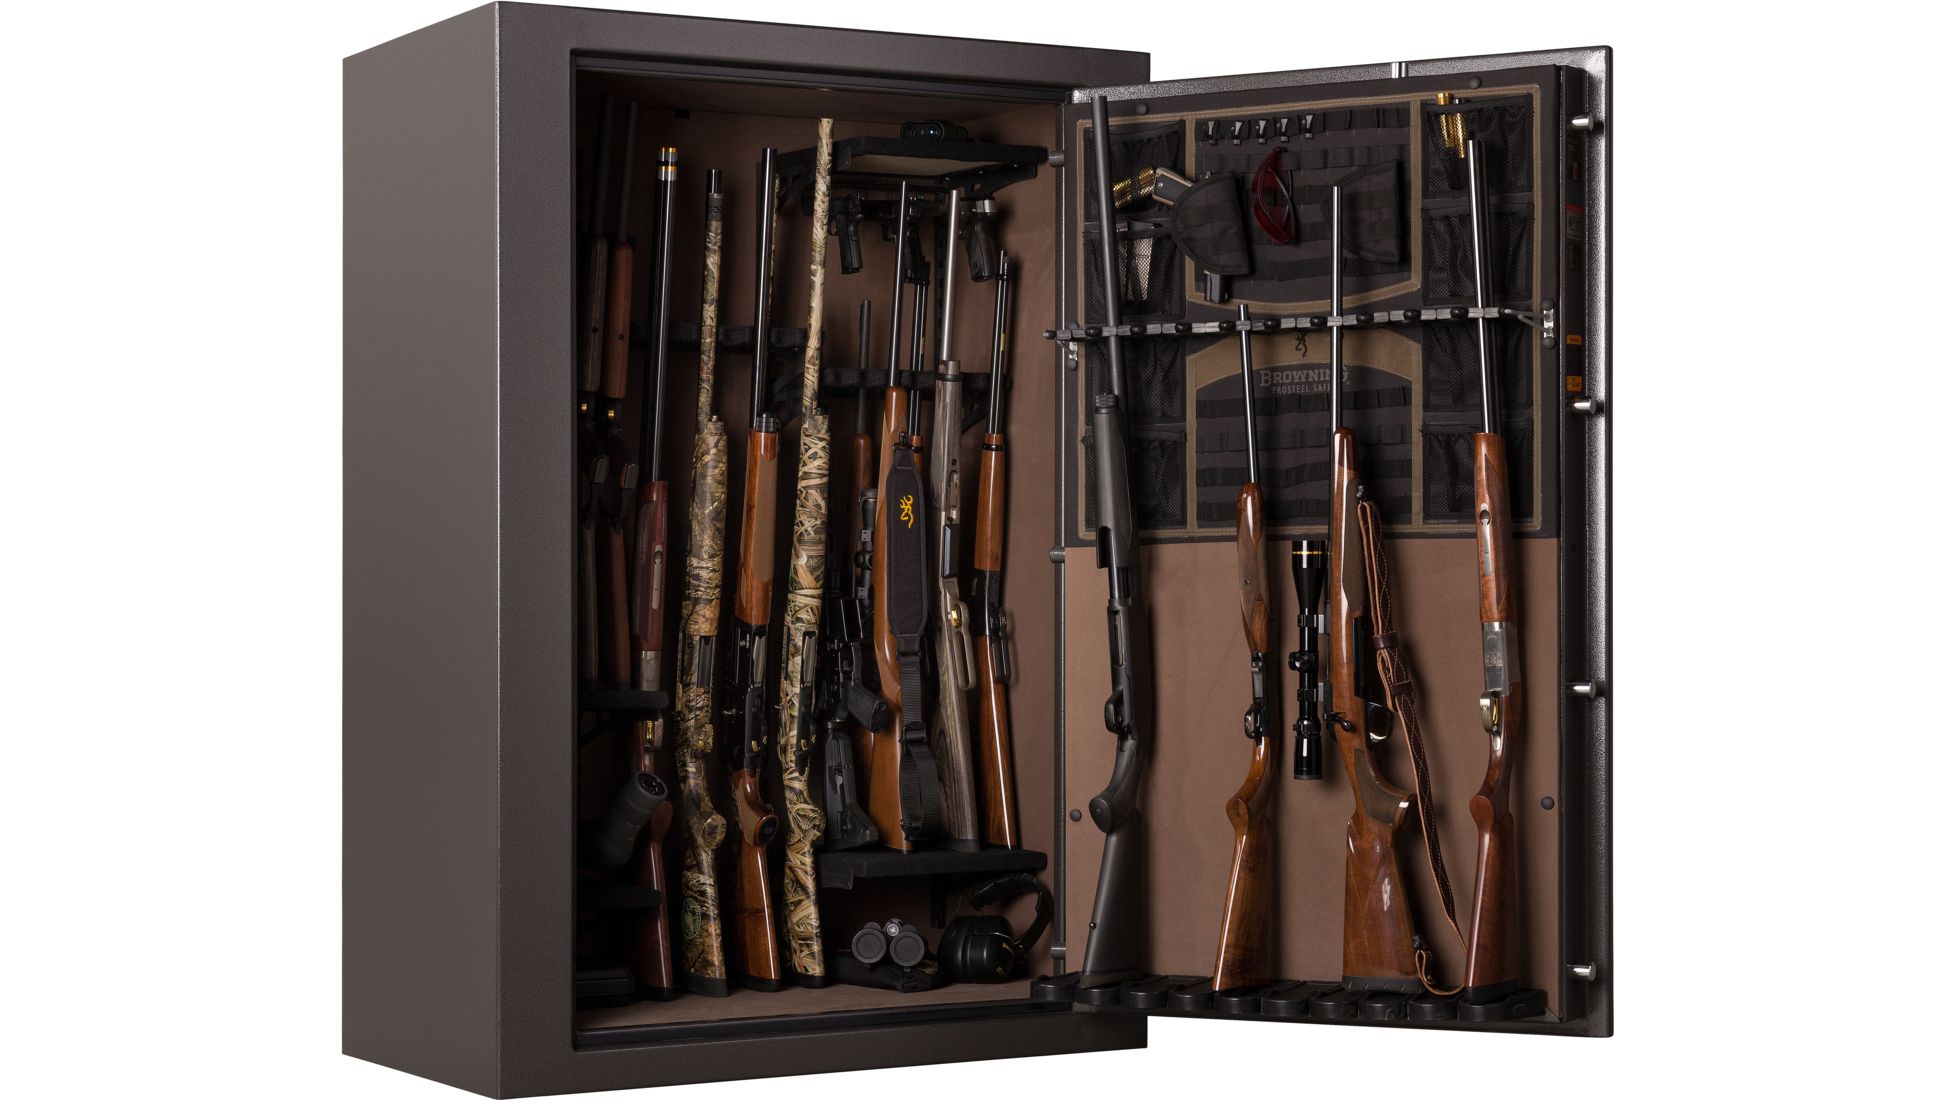 Browning Safes Hawg Hg49 Gun Safe2 Models